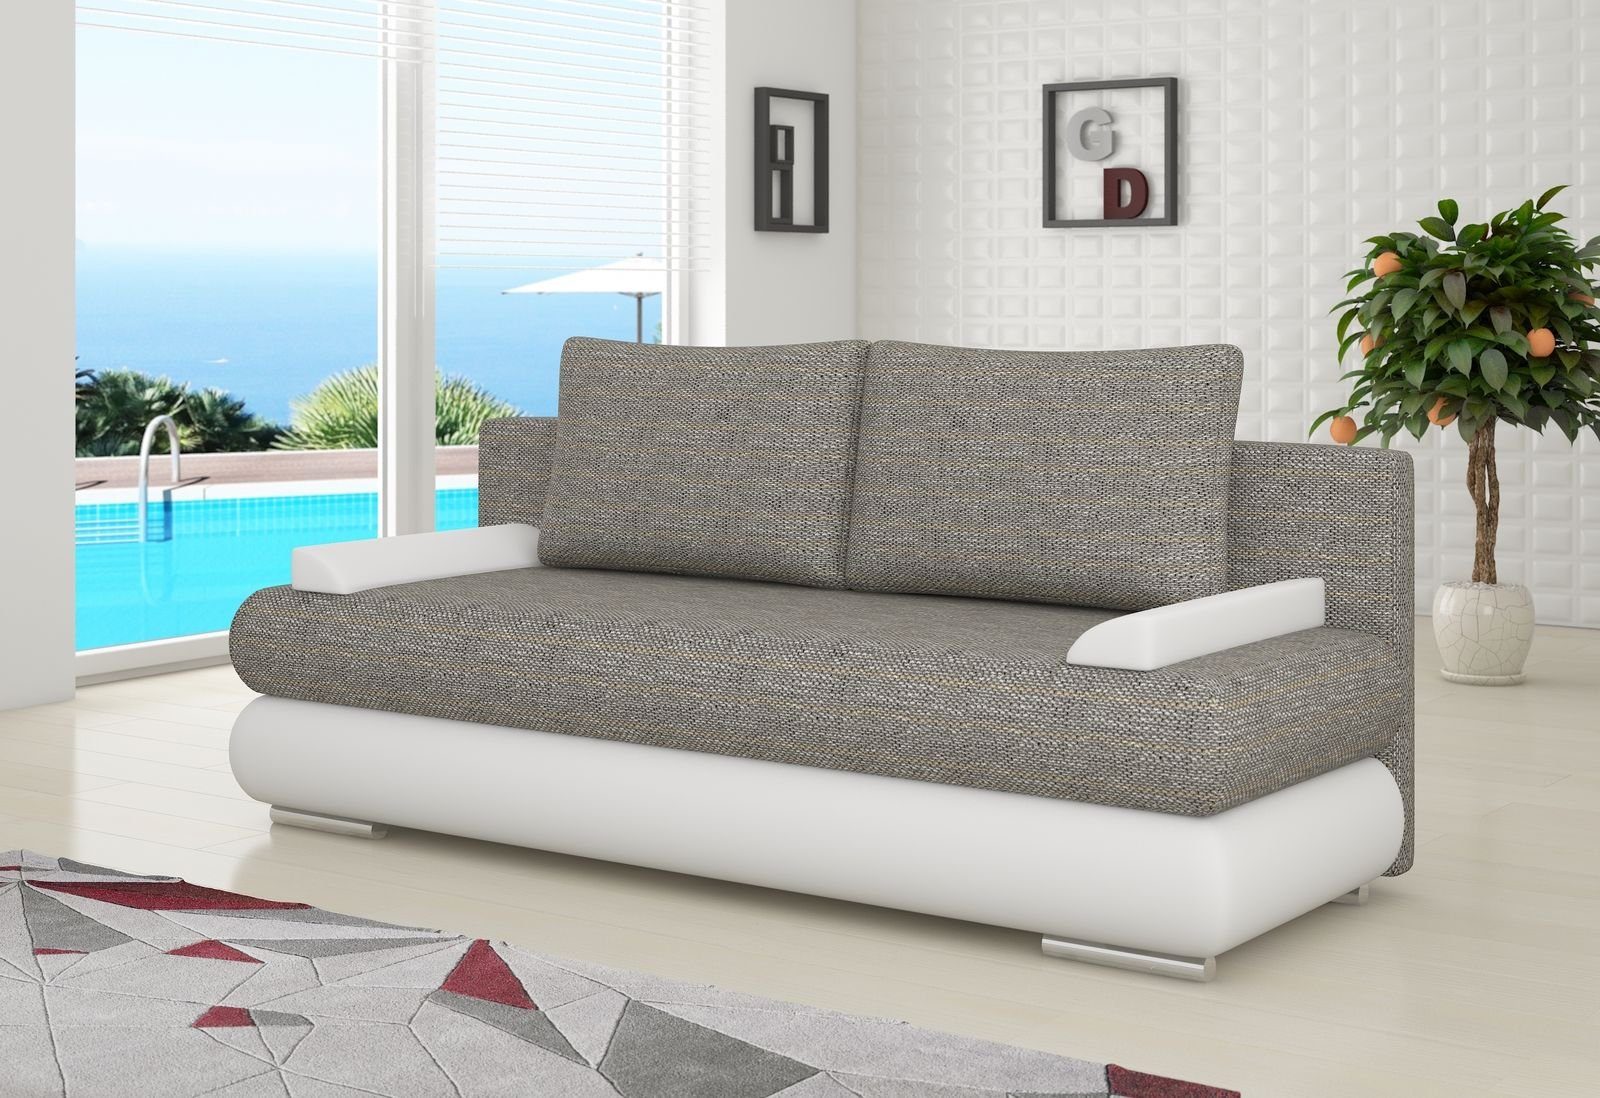 JVmoebel Sofa, Design Schlafsofa Couch Polster 3 Sitzer Stoff Couch Gästezimmer Hellgrau / Weiß